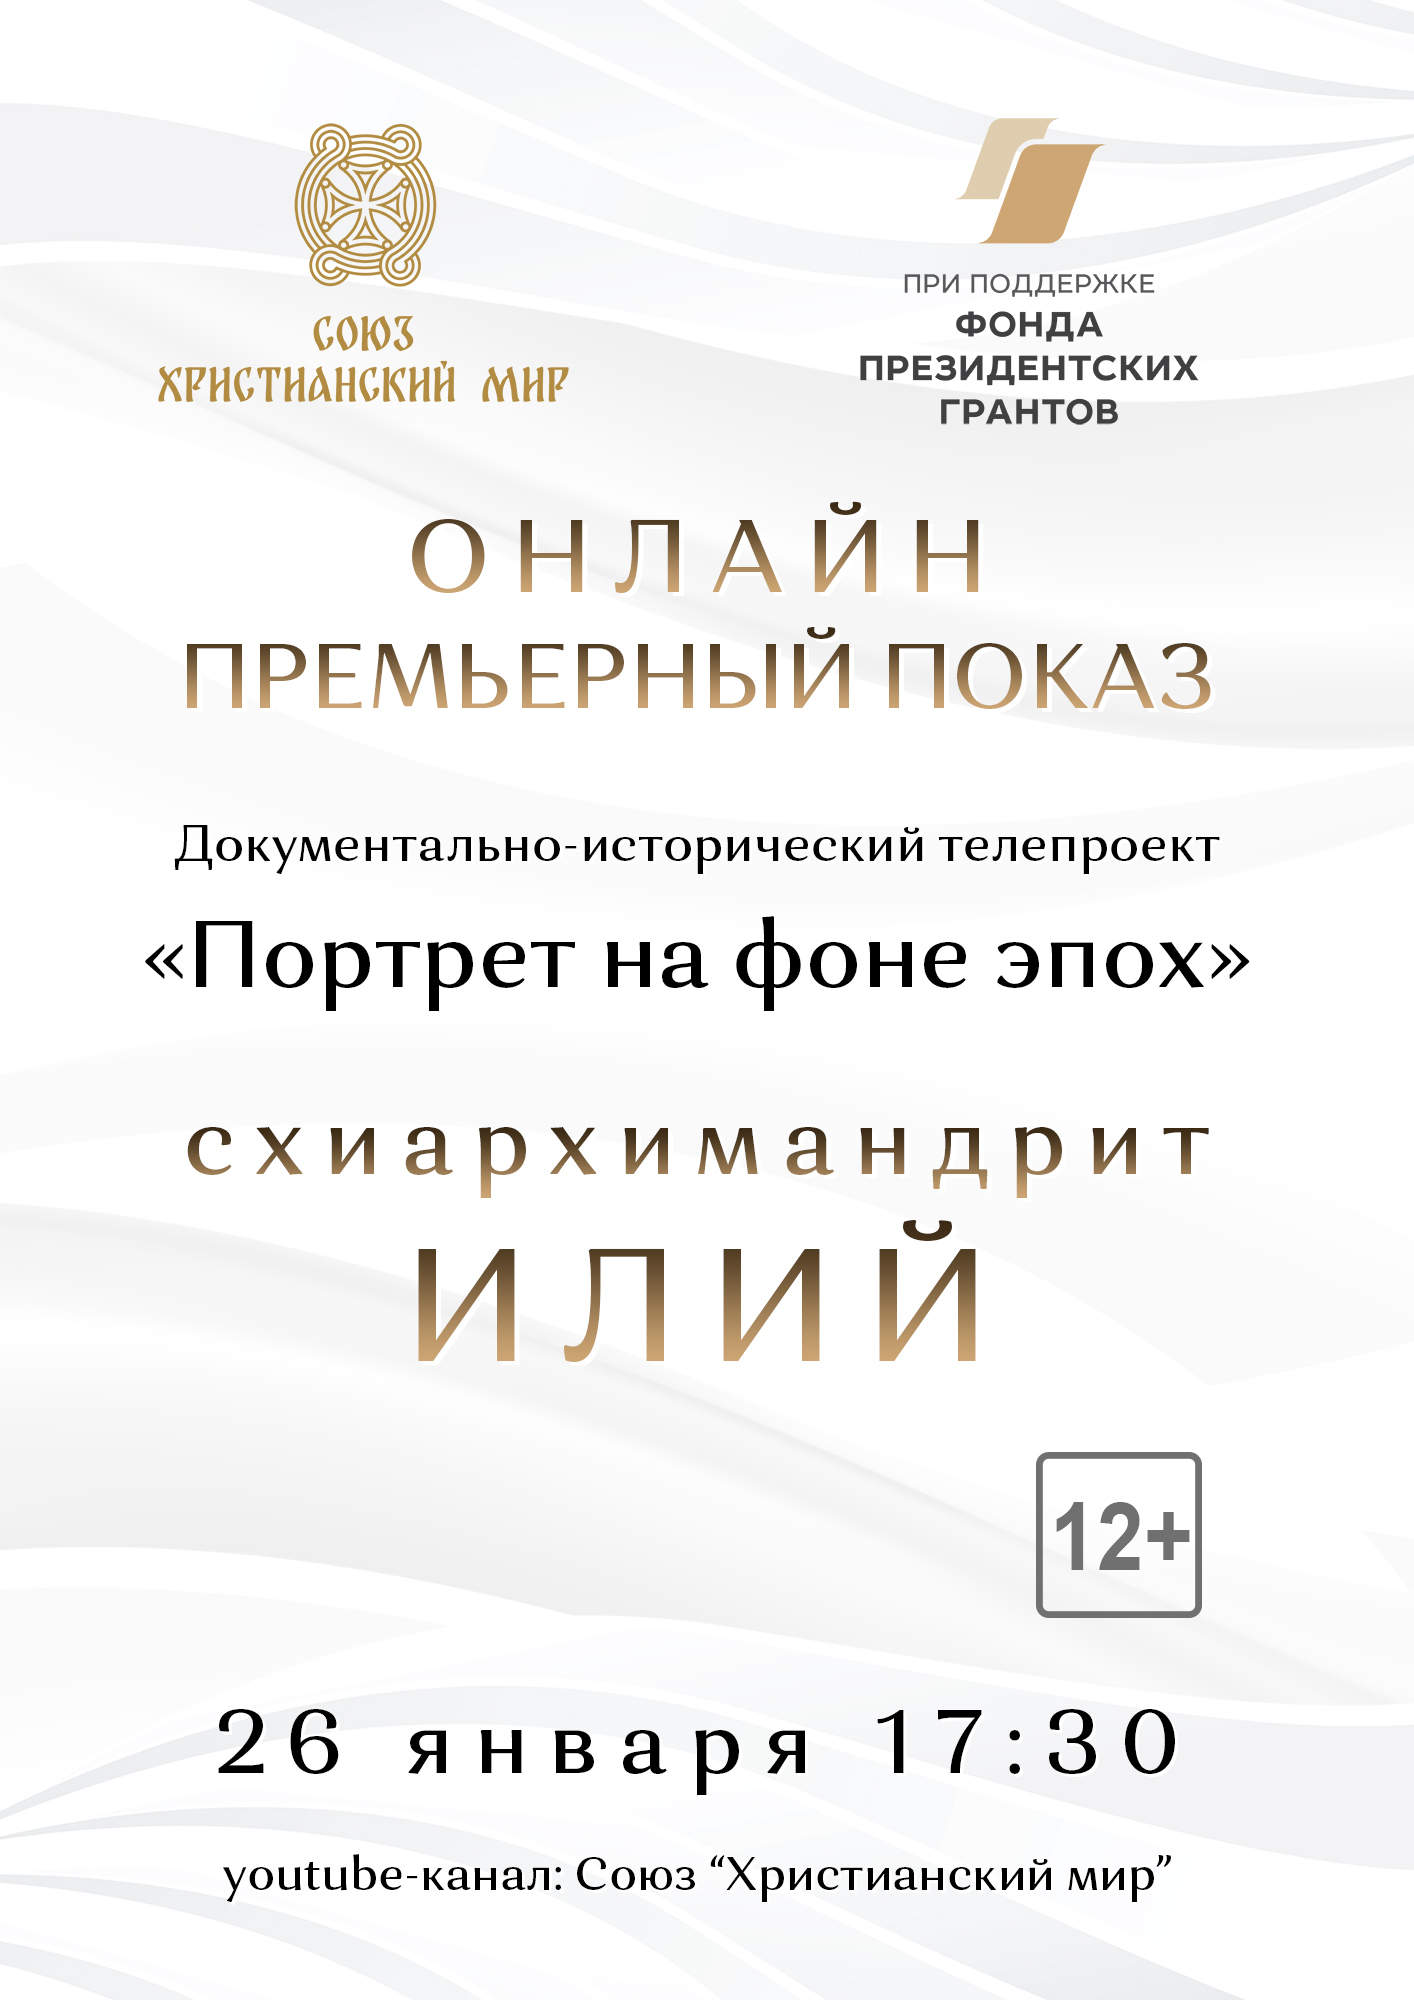 В Москве в онлайн формате состоится презентация и премьерный показ документально-исторического фильма «Портрет на фоне эпох. Схиархимандрит Илий»